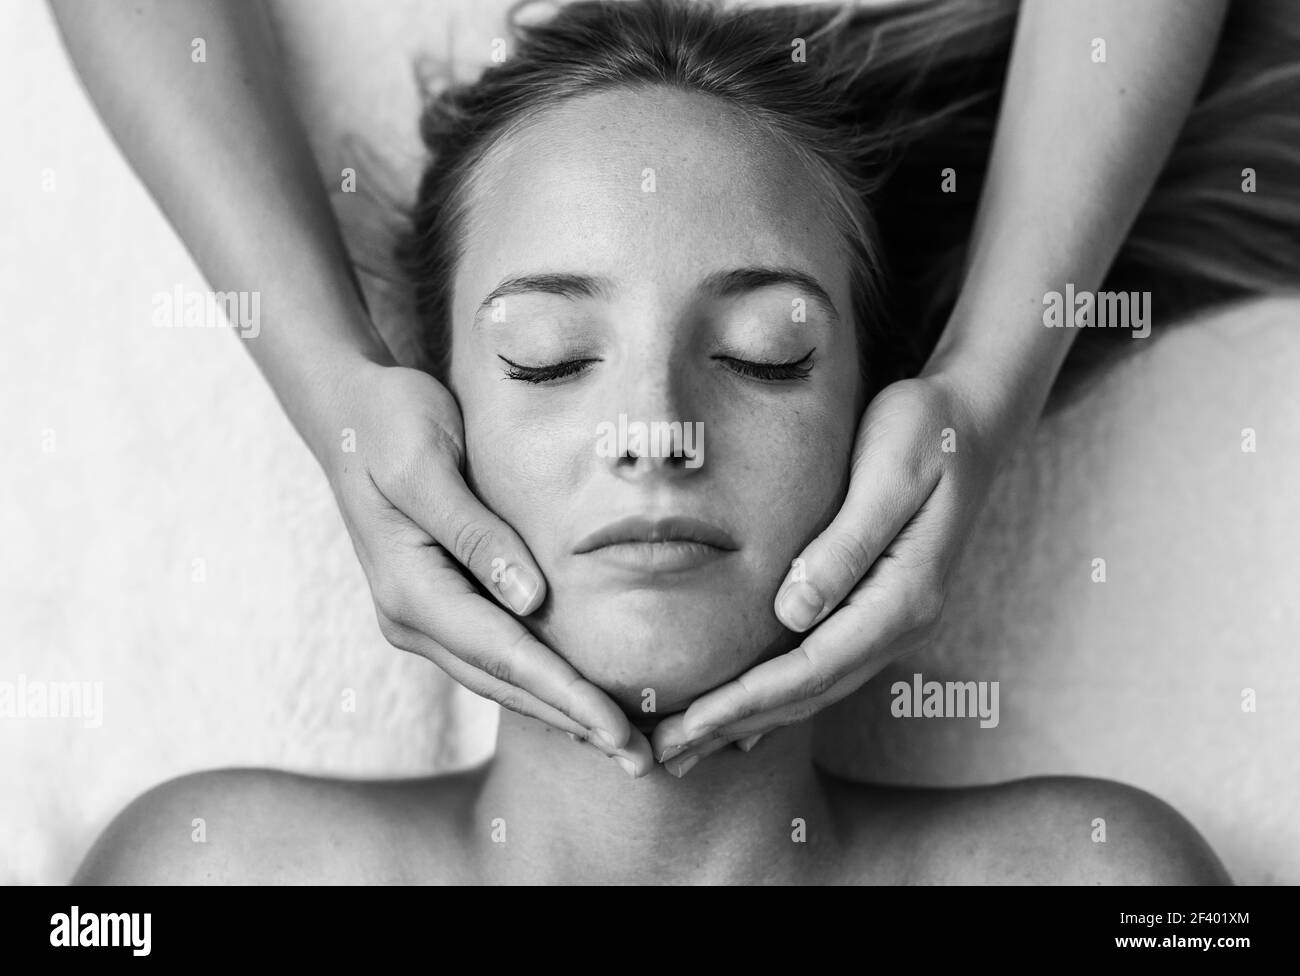 Jeune femme recevant un massage de la tête dans un centre de spa. Jeune femme blonde recevant un massage de la tête dans un centre thermal avec les yeux fermés. La patiente reçoit un traitement par un thérapeute professionnel. Banque D'Images